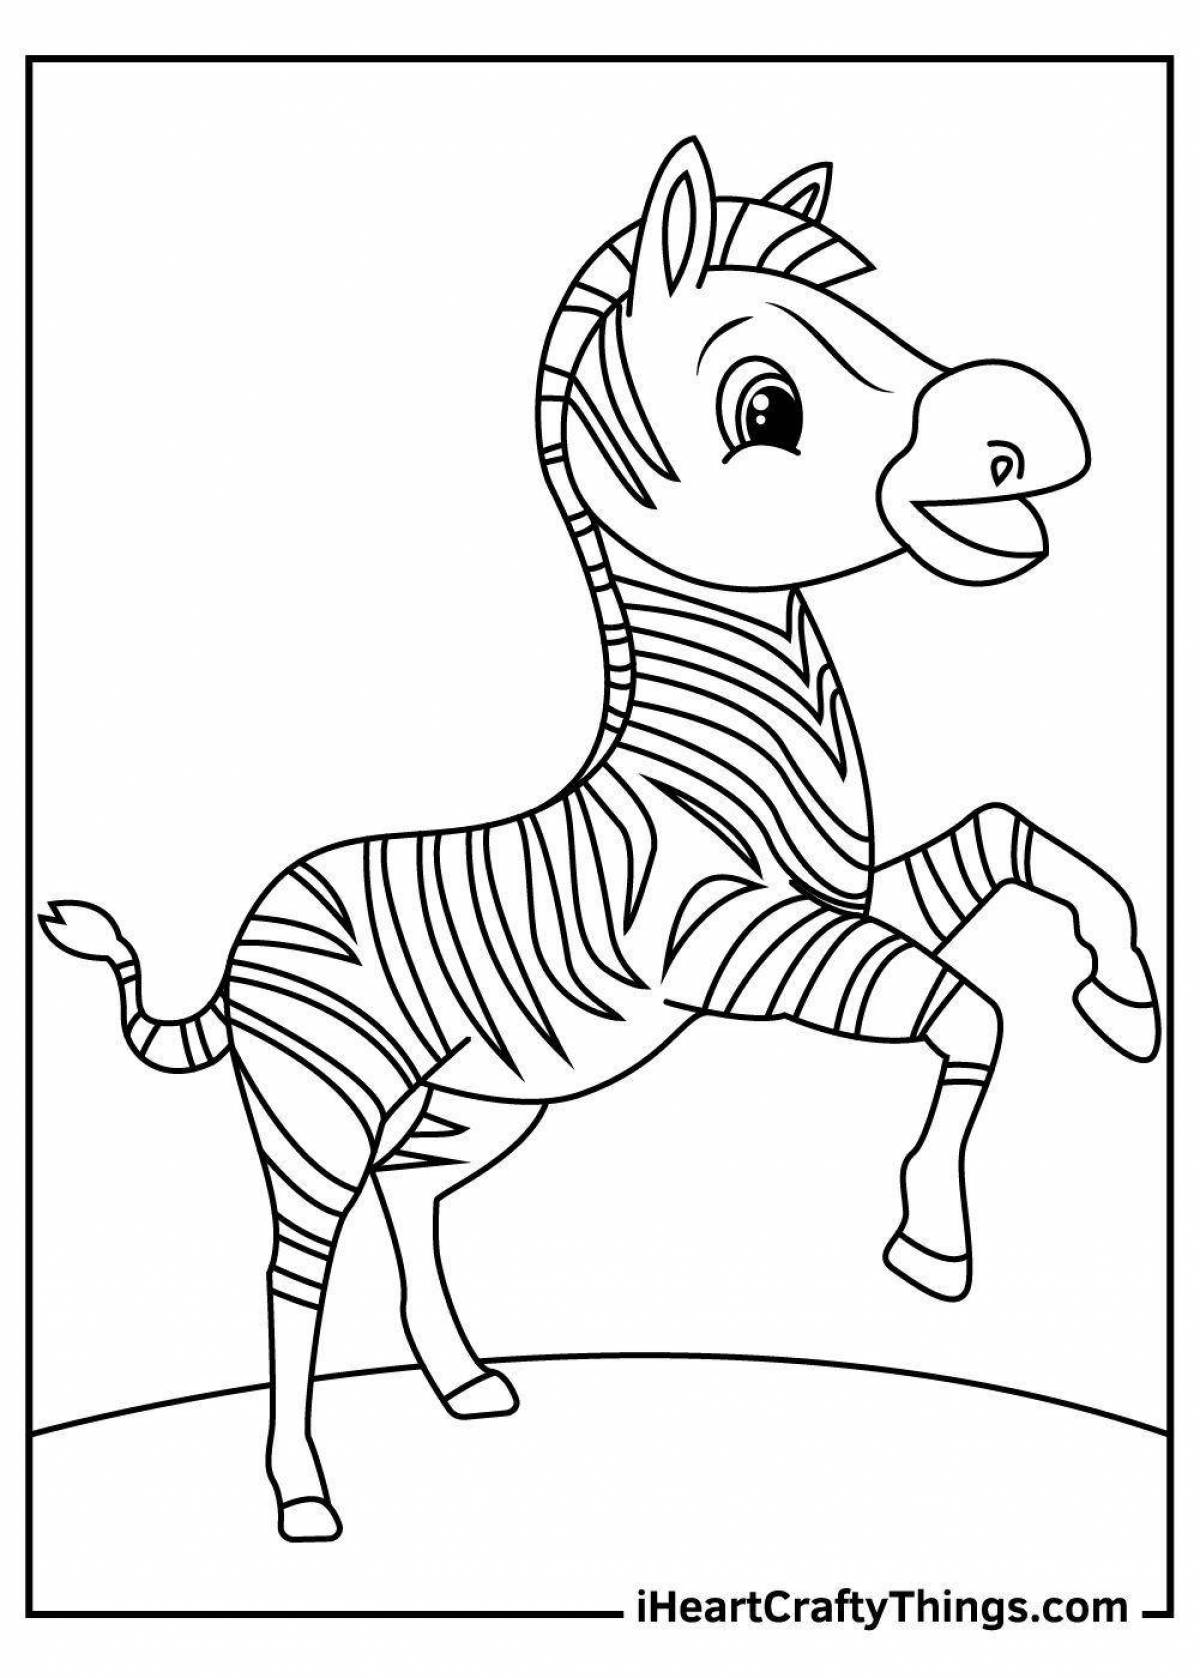 Замечательная раскраска зебра для дошкольников 3-4 лет